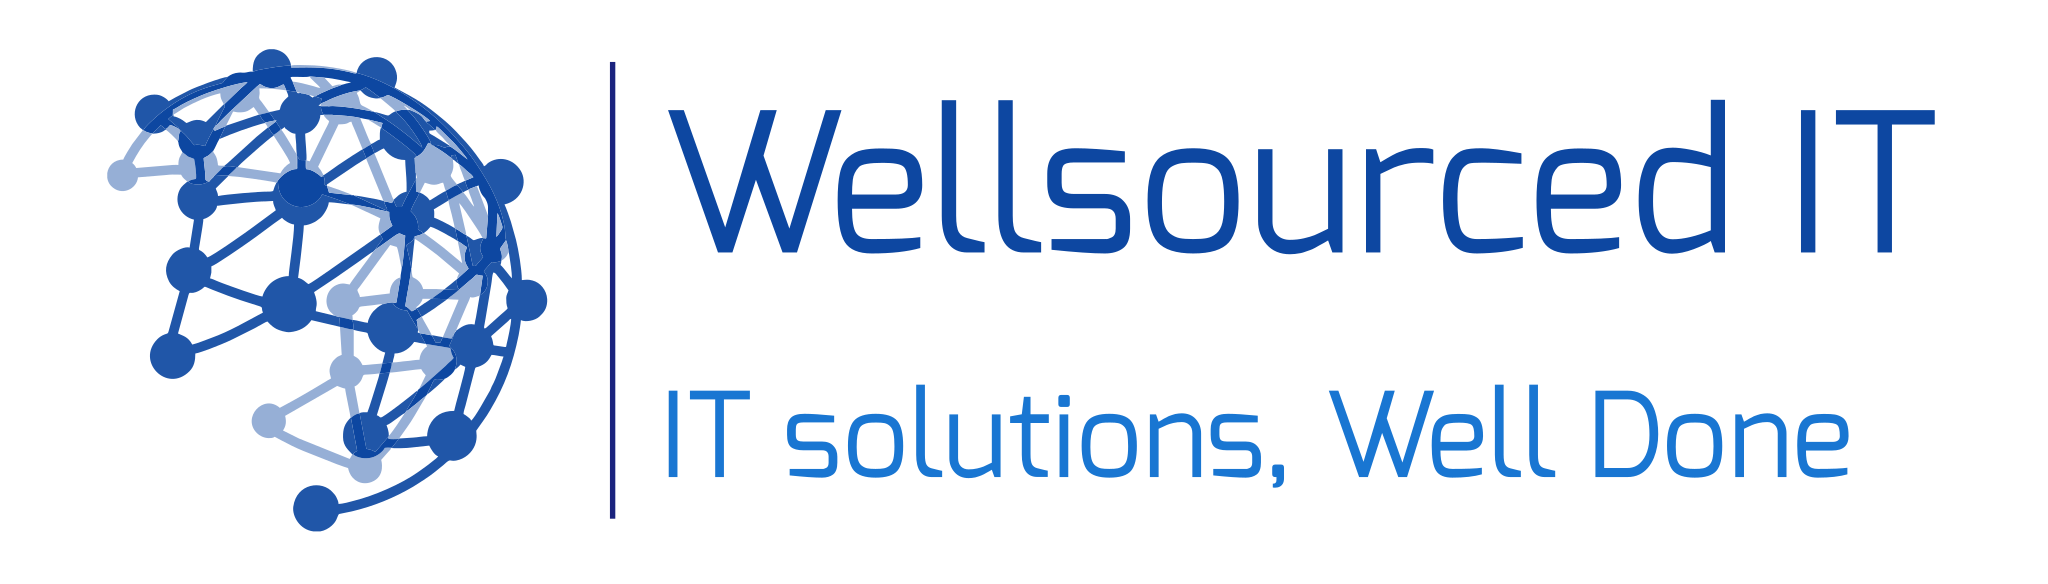 Wellsourced IT, LLC